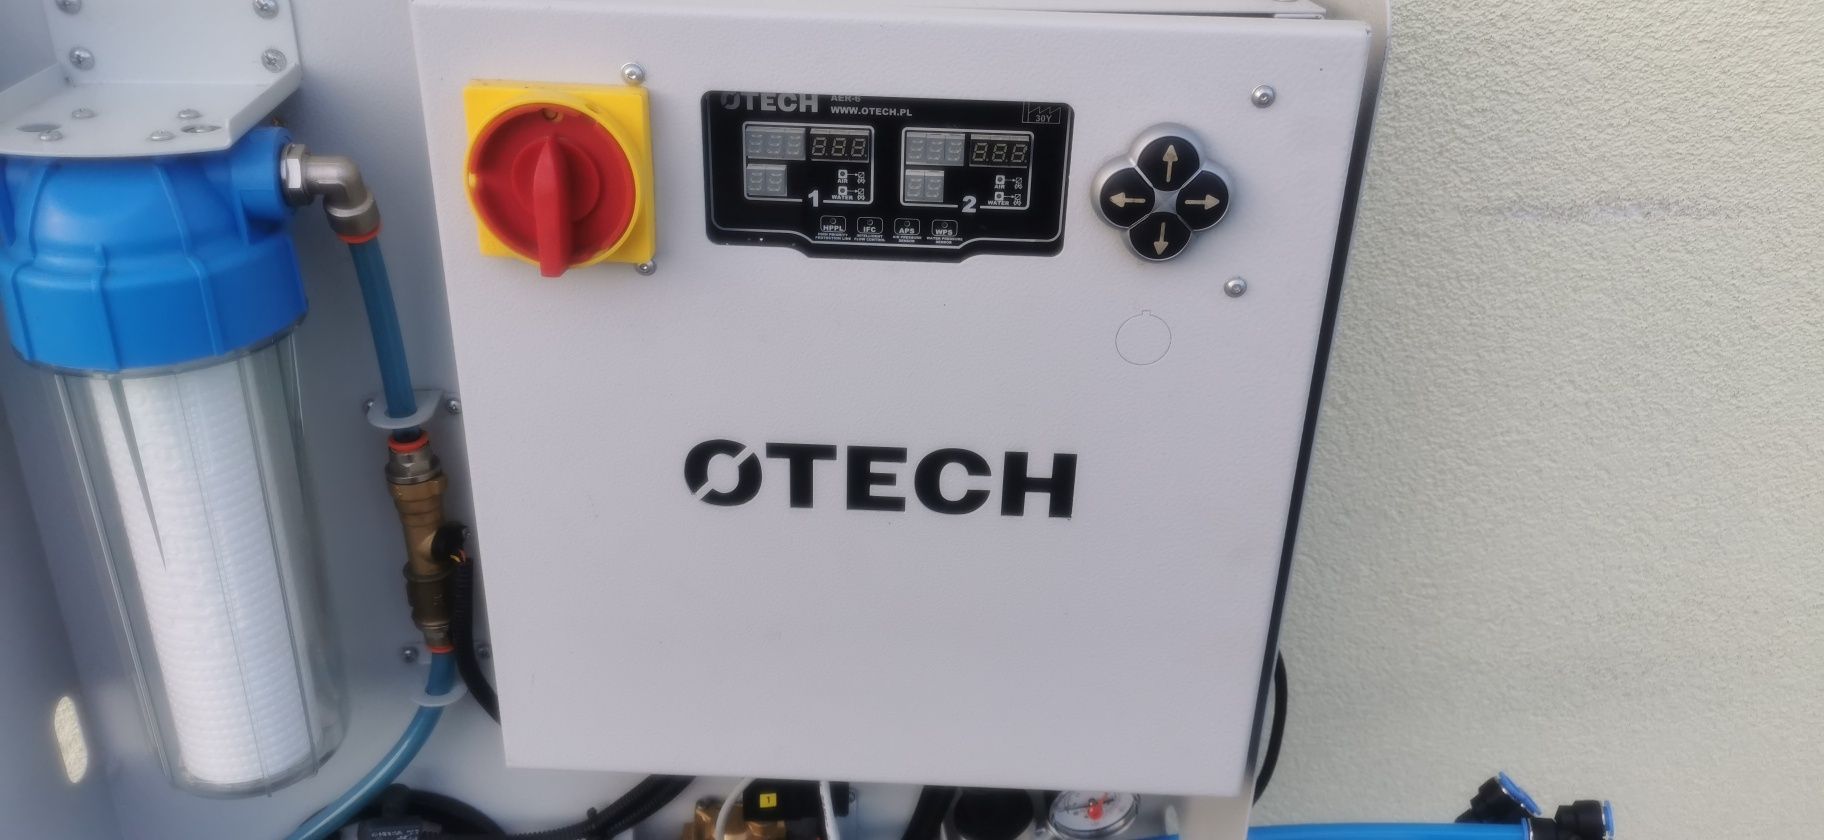 Przemysłowy nawilżacz powietrza Otech AERO-5s